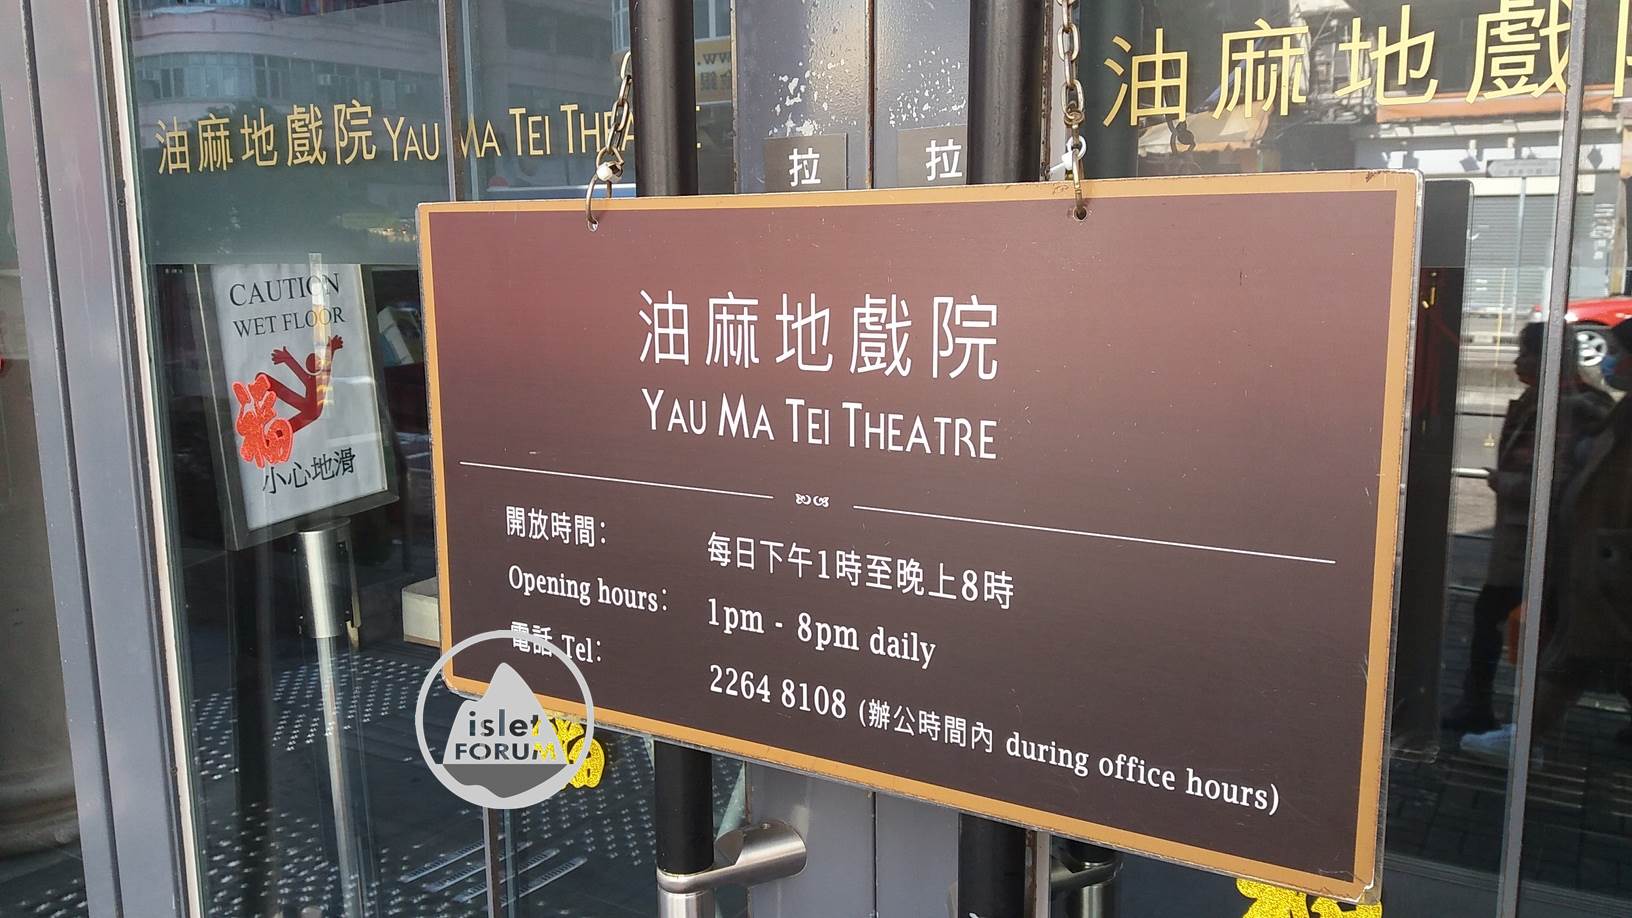 油麻地戲院yau ma tei theatre (3).jpg